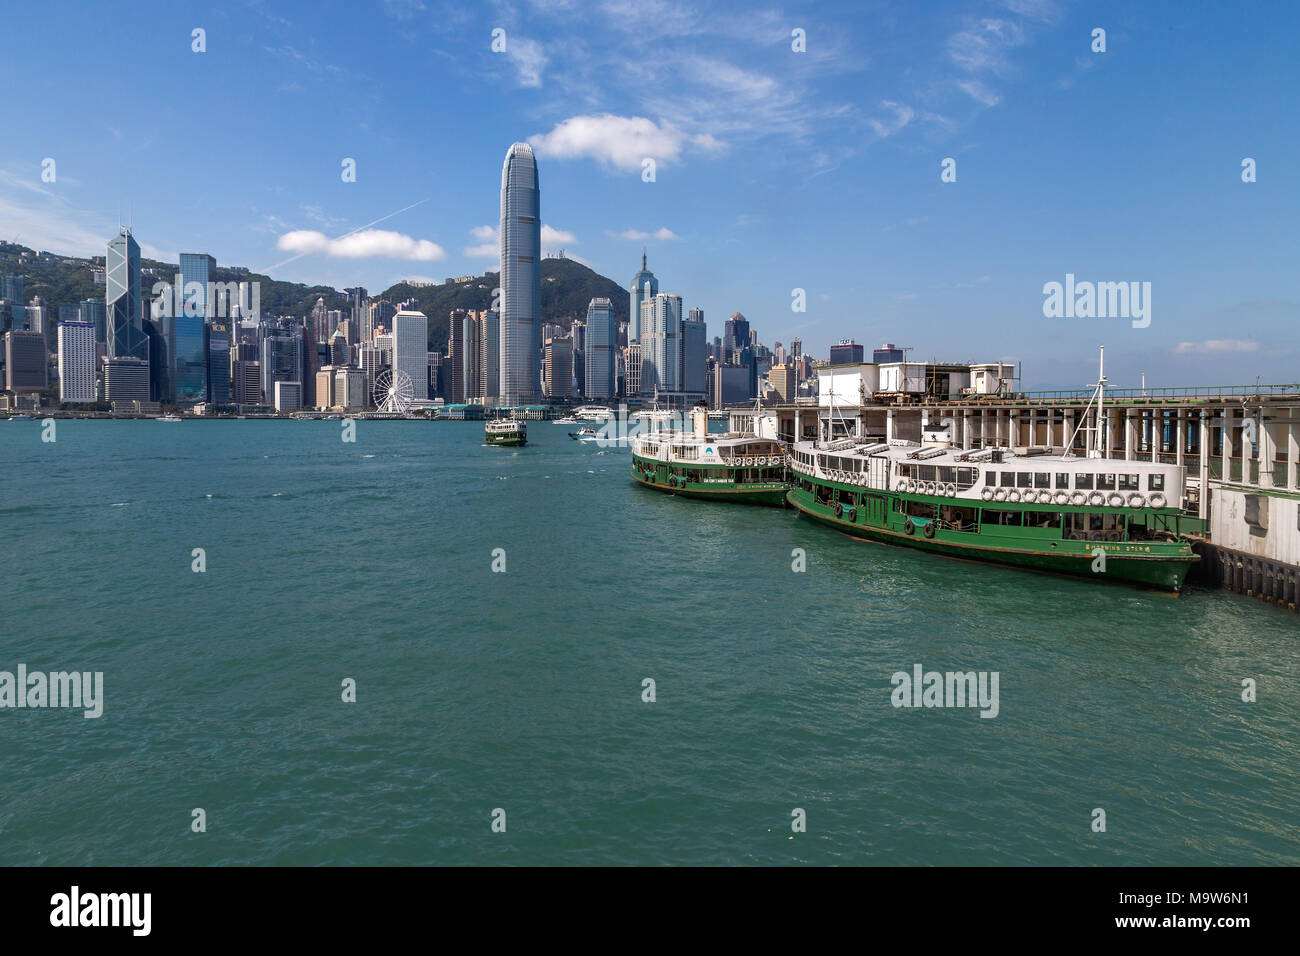 Star Ferry Pier, Victoria Harbour avec les gratte-ciel de l'île de Hong Kong en arrière-plan. Banque D'Images